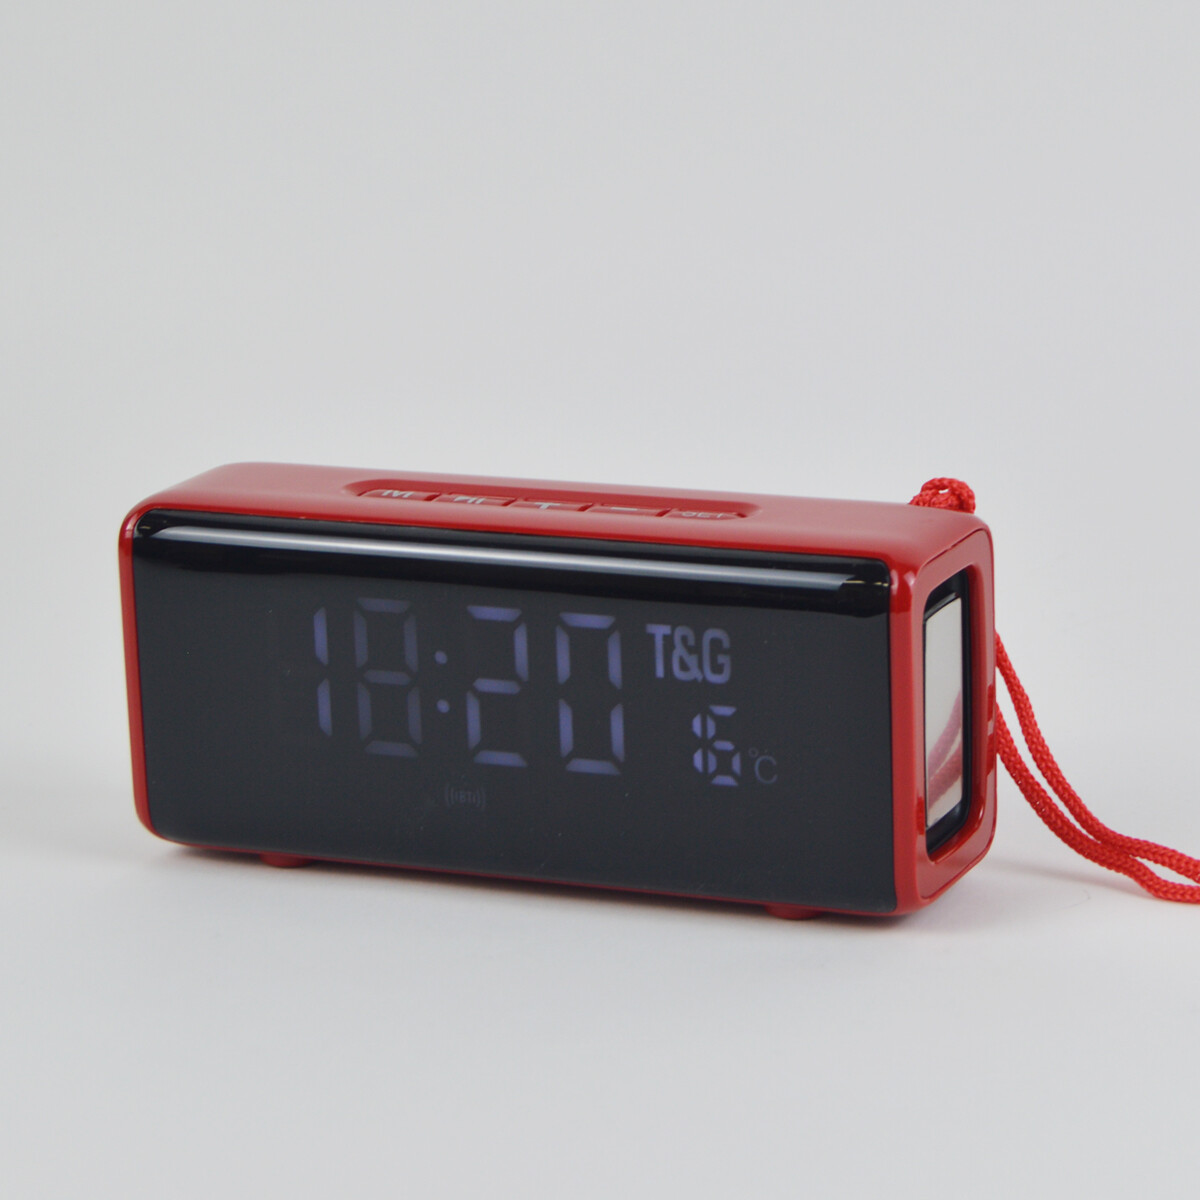 A la verdad Triatleta Petrificar Reloj Despertador Y Parlante Bluetooth Fm Usb Sd A Batería - Rojo — Mis  Petates